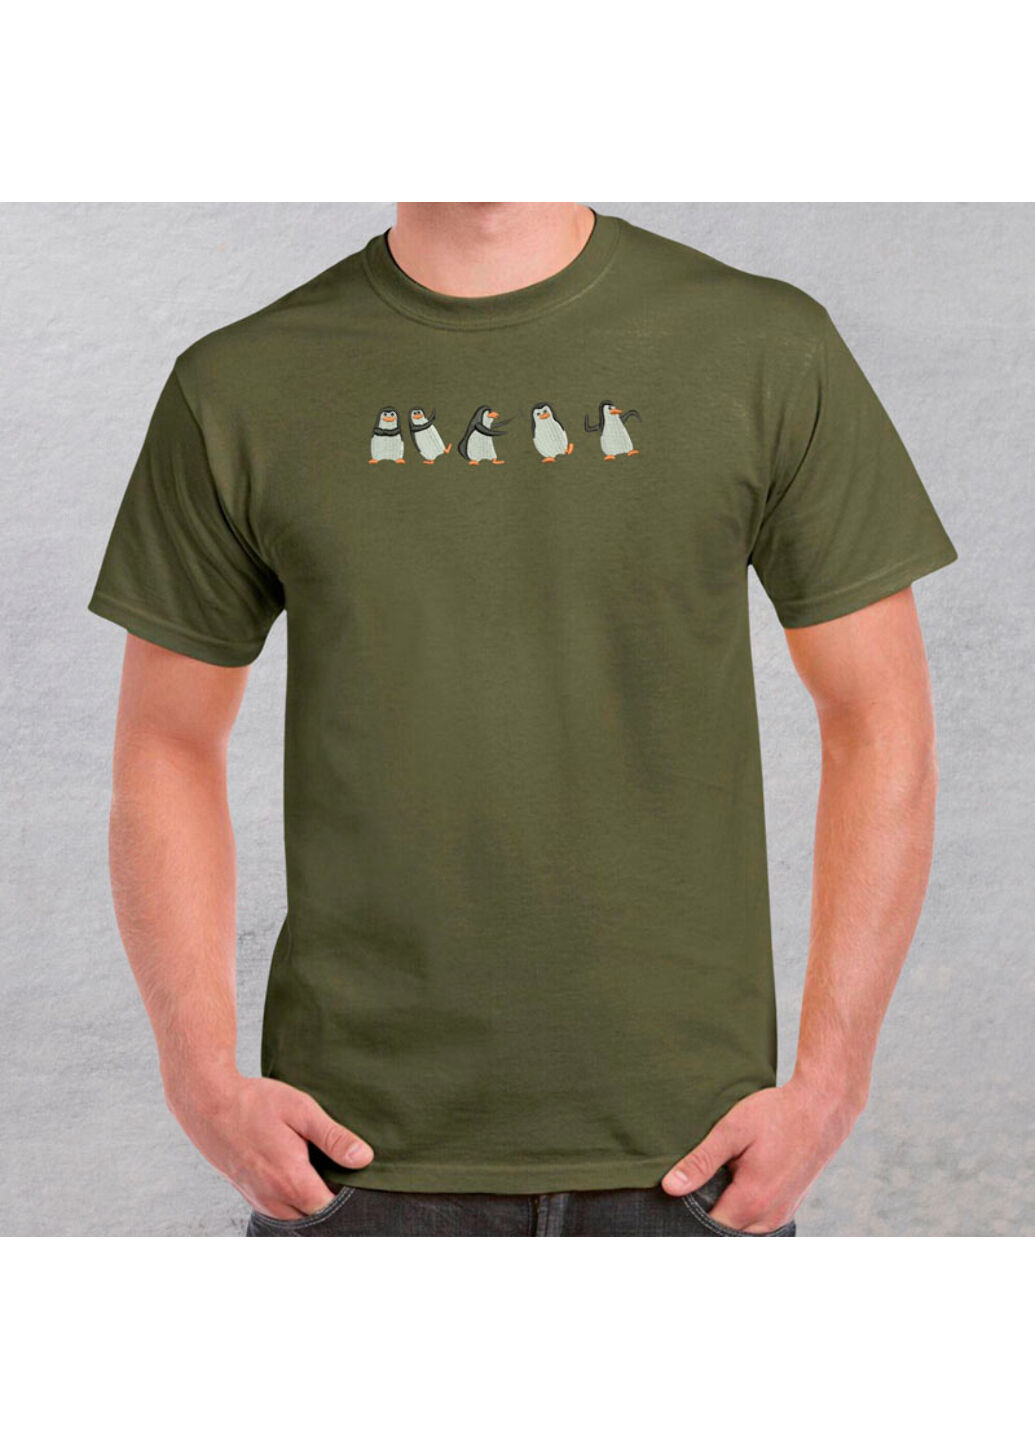 Хаки (оливковая) футболка с вышивкой пингвинов 01-4 мужская хаки xl No Brand